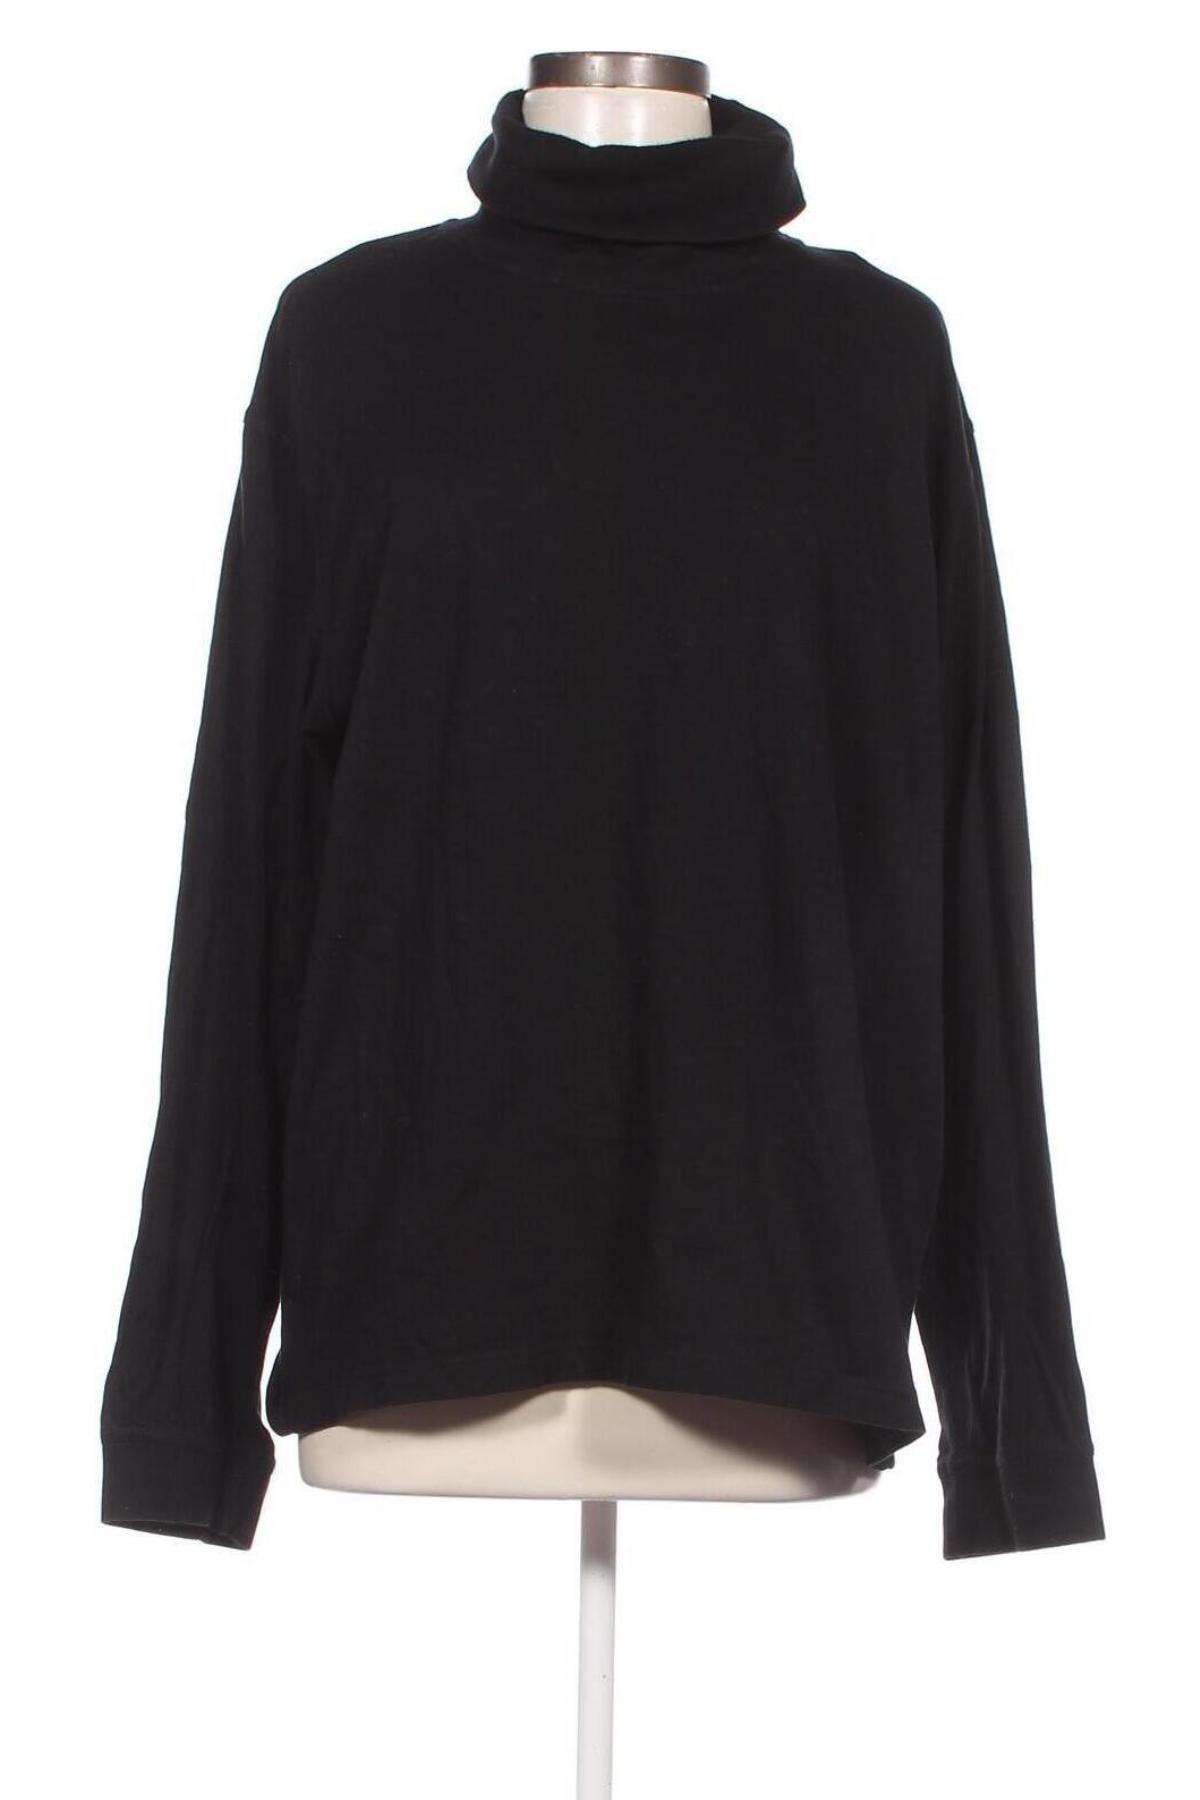 Γυναικεία μπλούζα Canda, Μέγεθος XL, Χρώμα Μαύρο, Τιμή 6,35 €